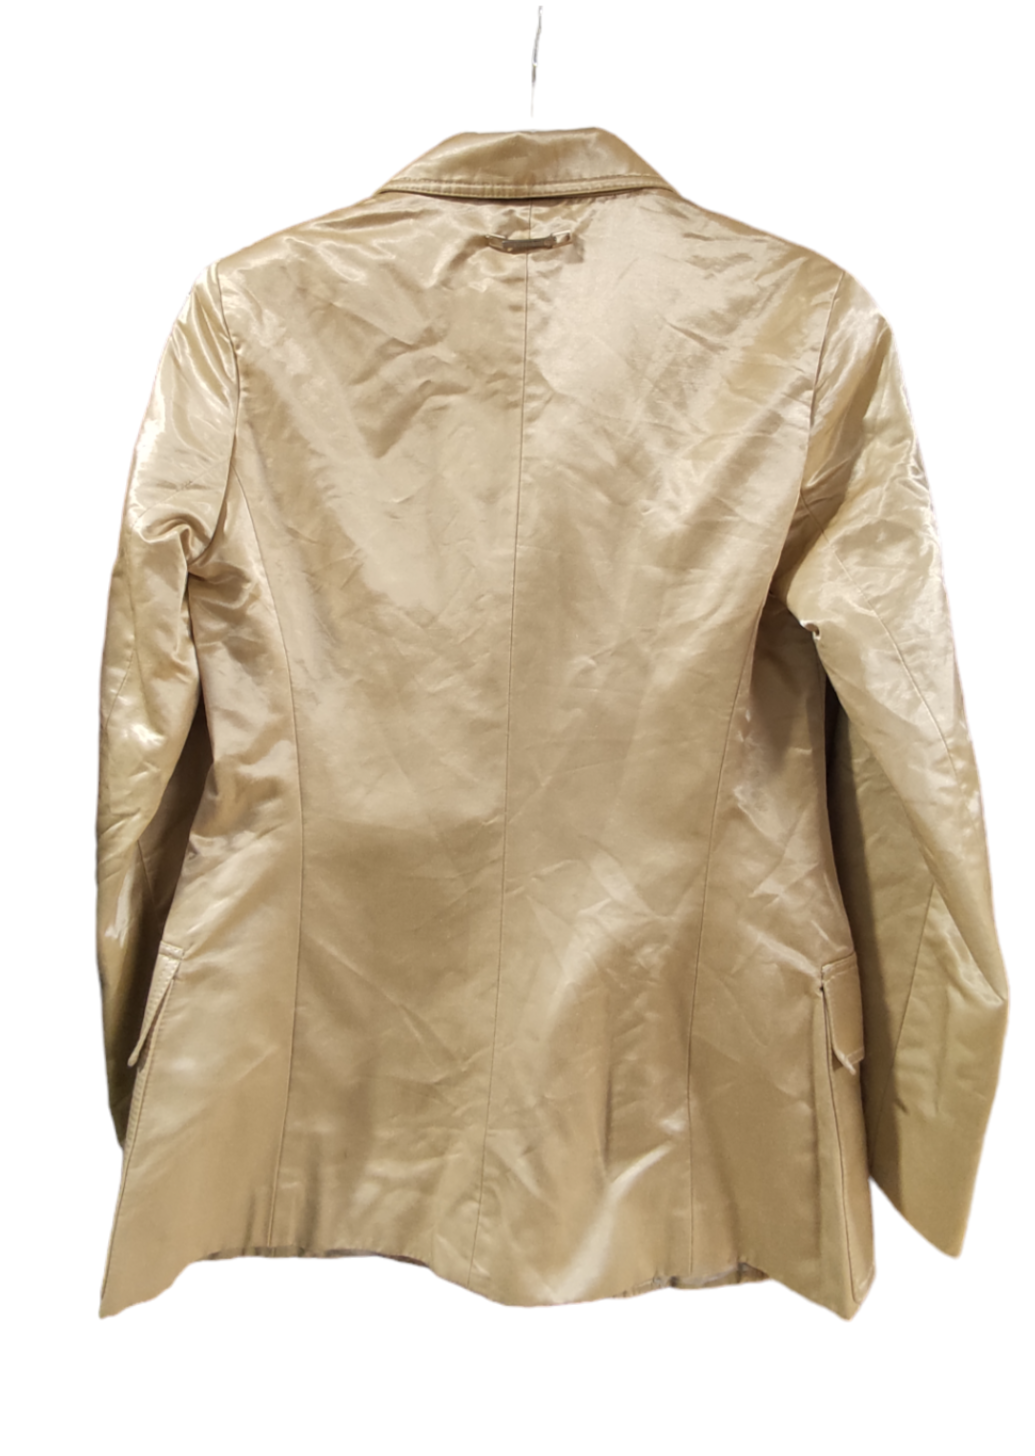 Premium Branded Σατινέ Γυναικείο Σακάκι στο Χρώμα του Χρυσού (Small)